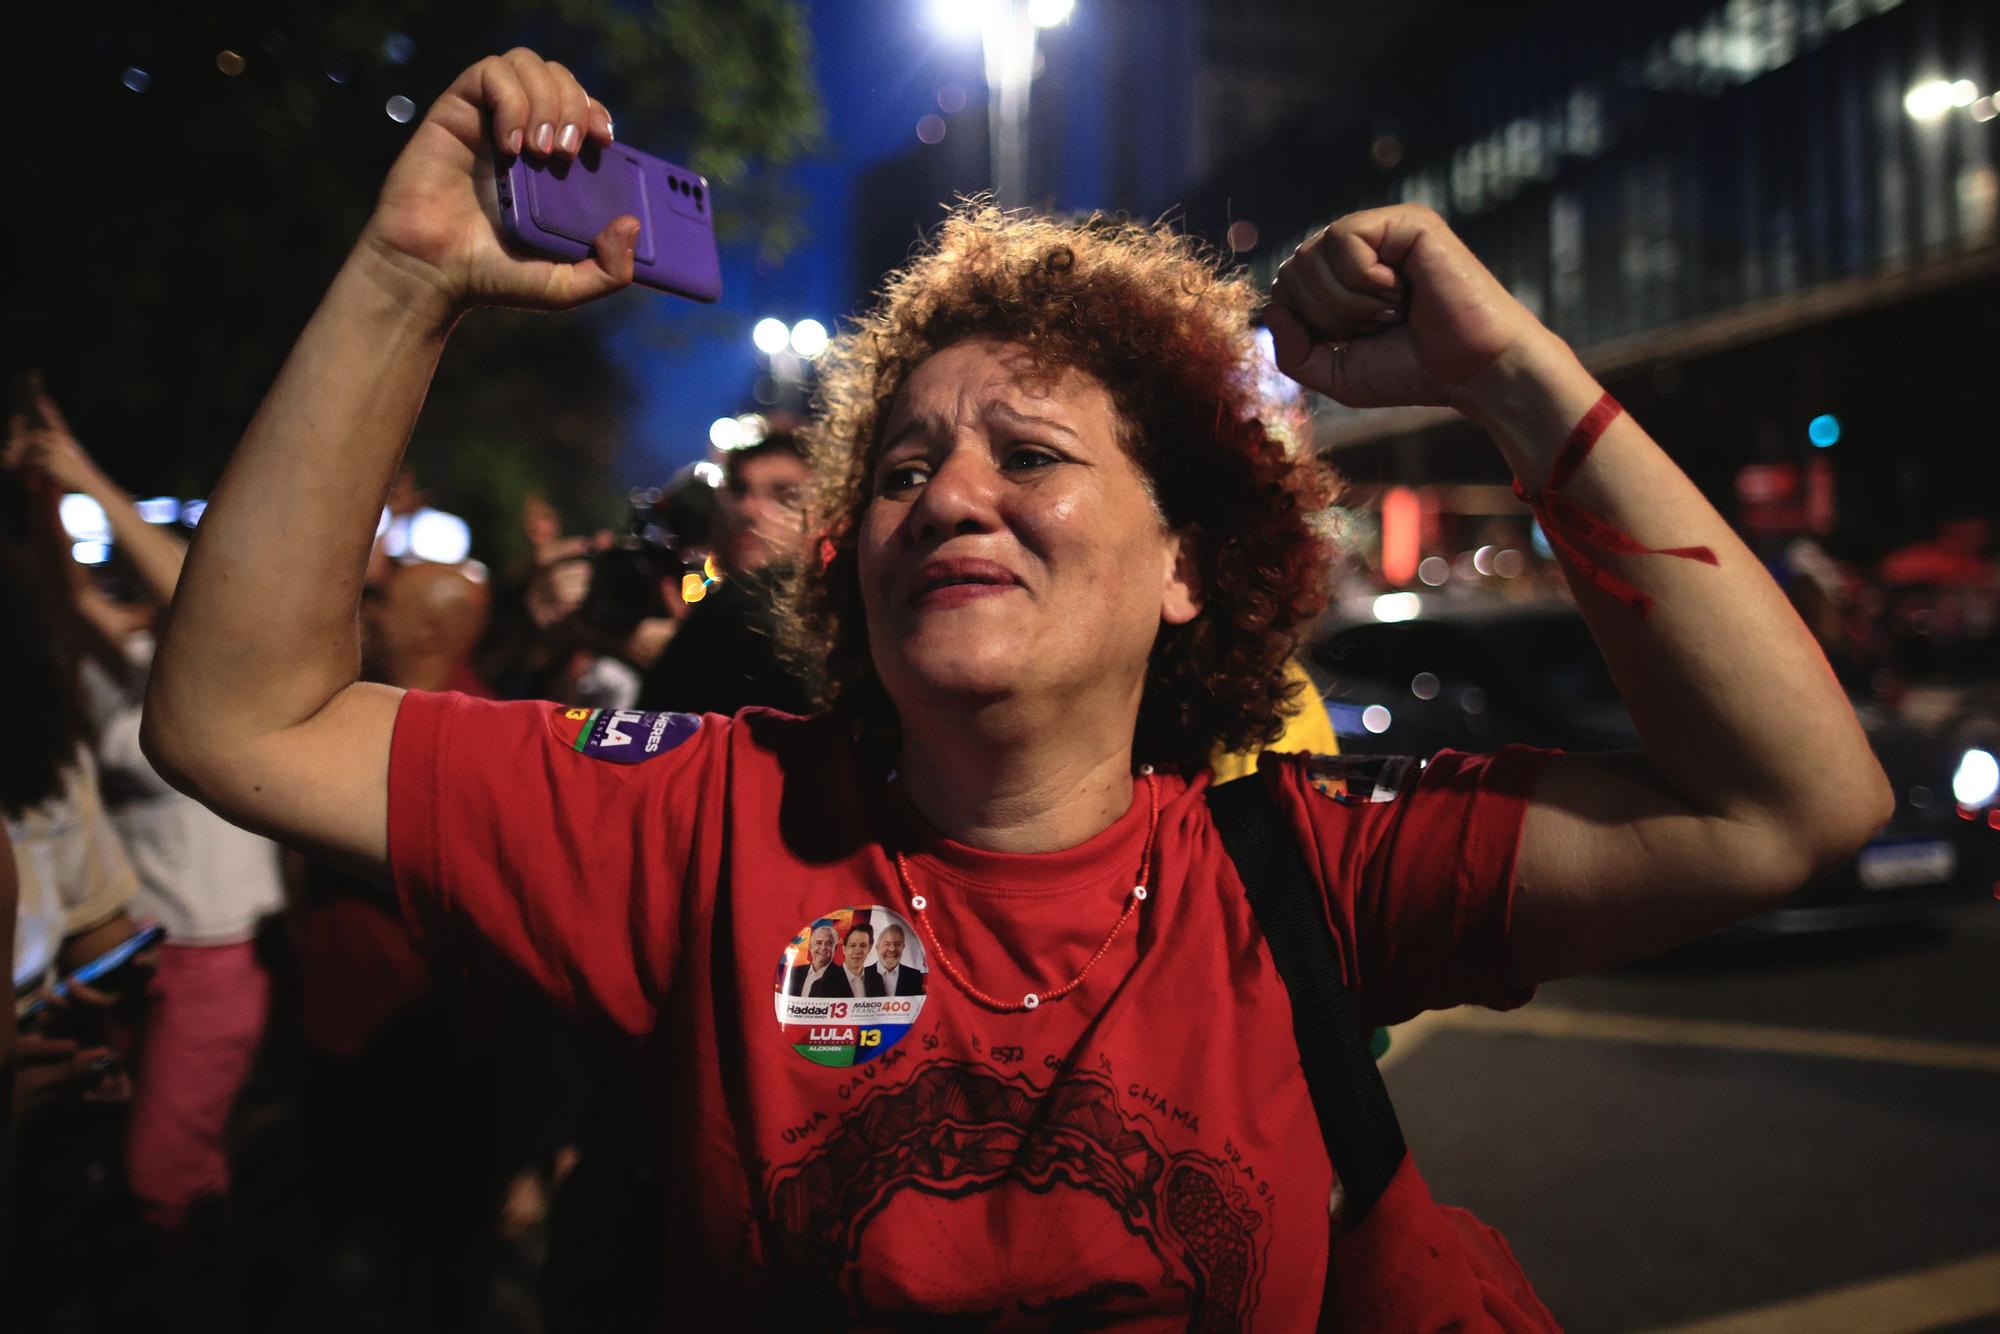 Los seguidores de Lula da Silva celebran su victoria en las elecciones brasileñas